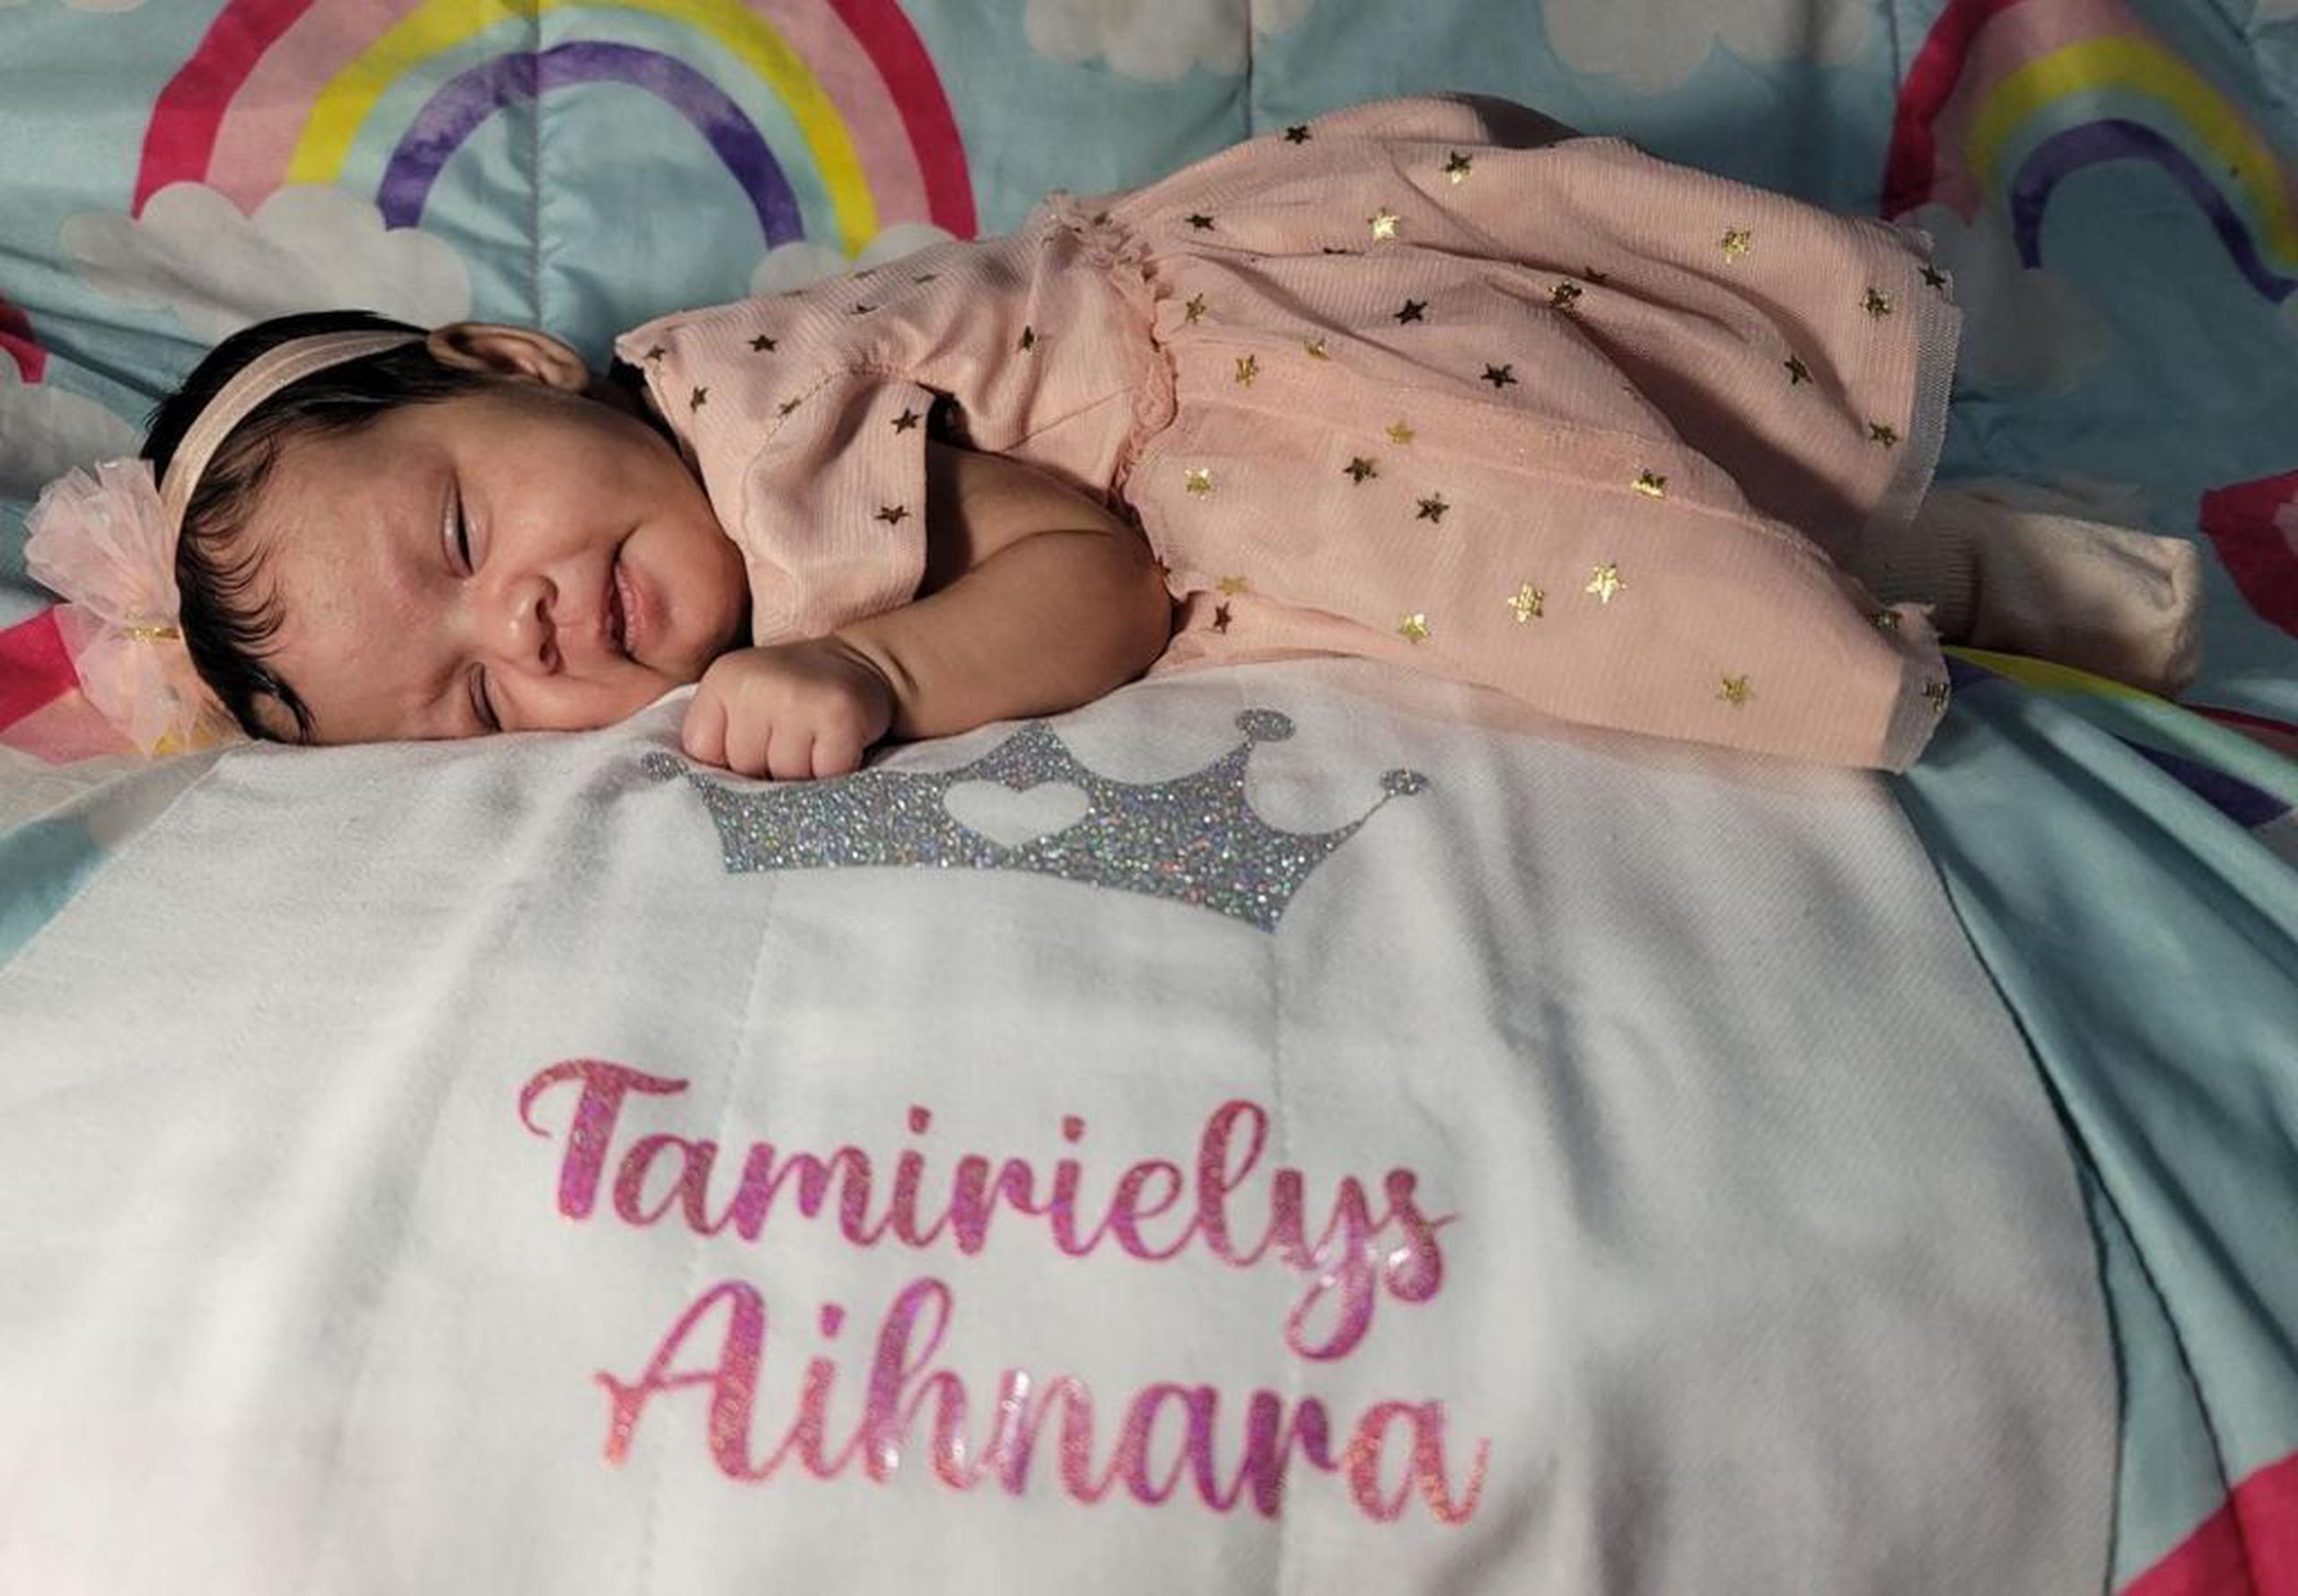 La pequeña Tamirielys Aihnara nació prematuramente a los siete meses de gestación y está evolucionando muy bien